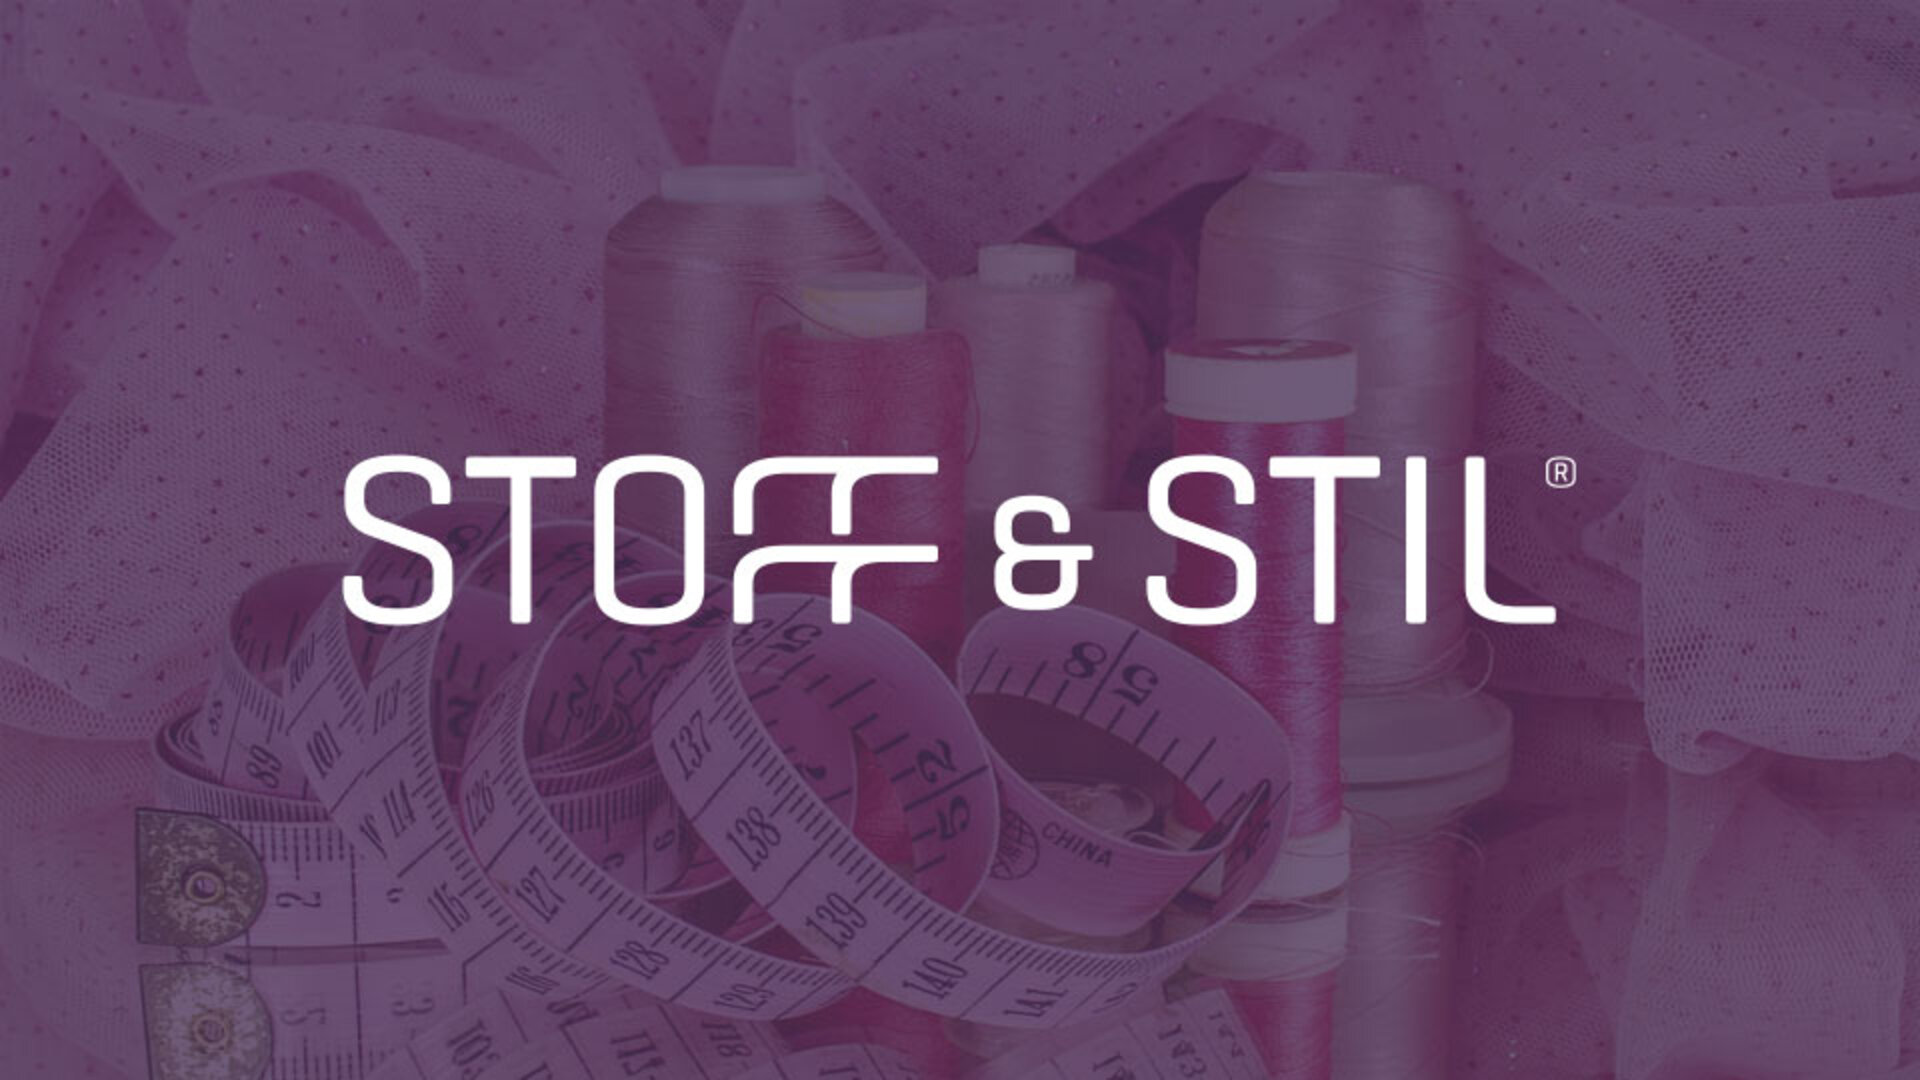 Stoff & Stil øger kundeoplevelsen med nyt oplevelsesunivers online